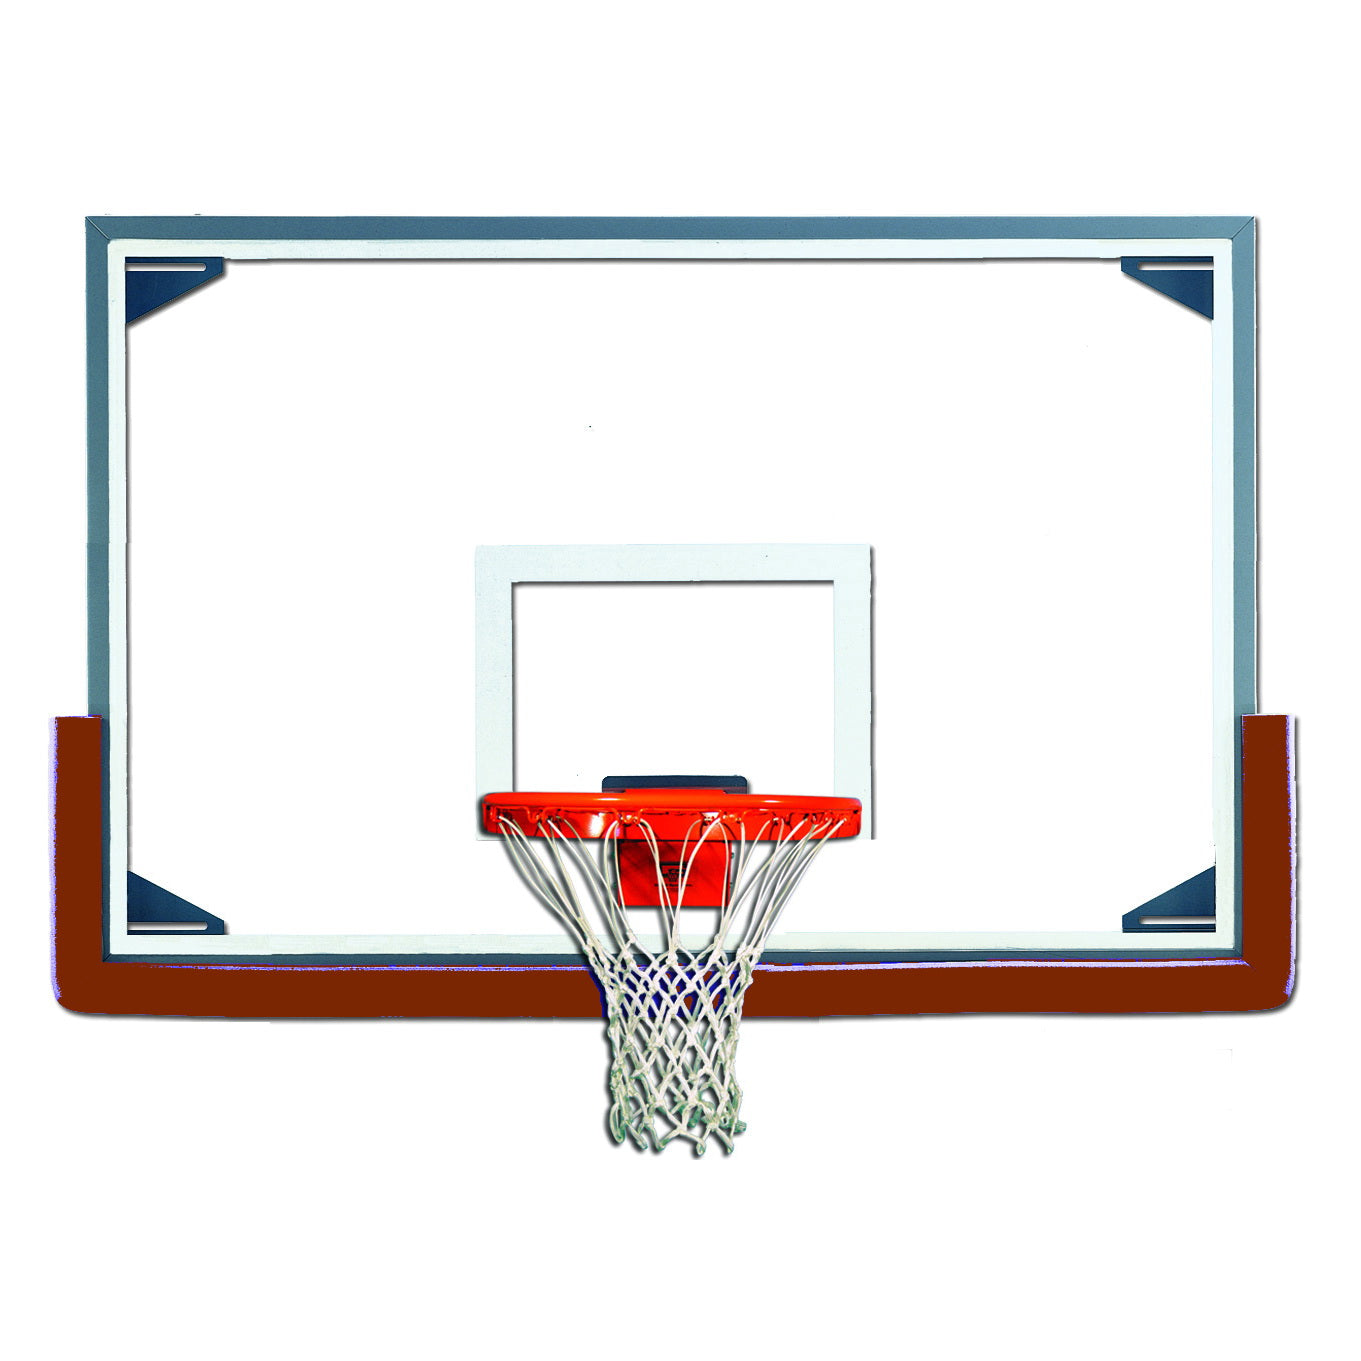 Gared Oversized Steel-Framed Glass Basketball Backboard